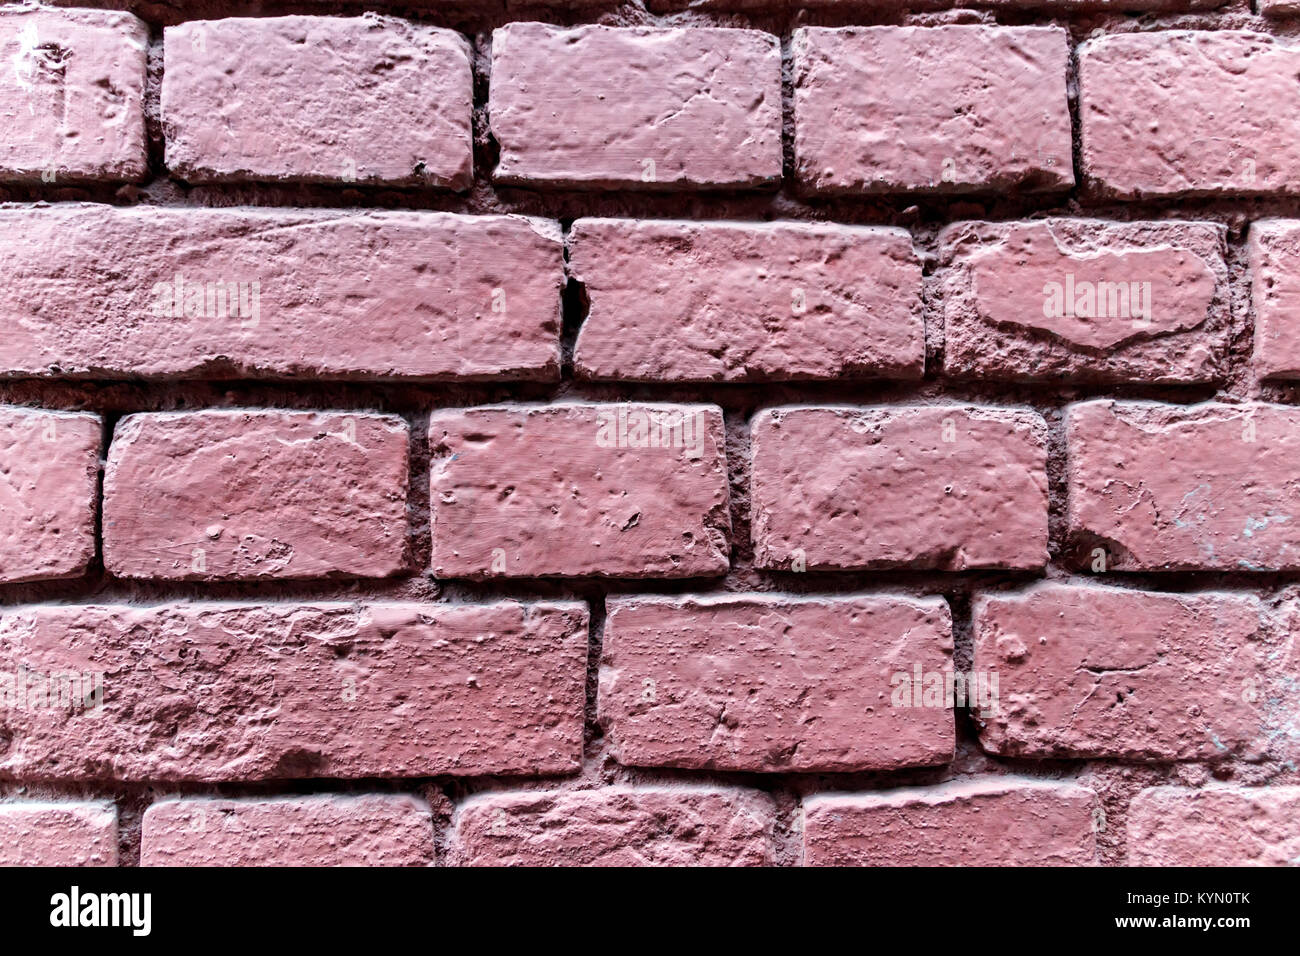 Muro di mattoni cotti al forno colorati in rosa intenso Foto Stock